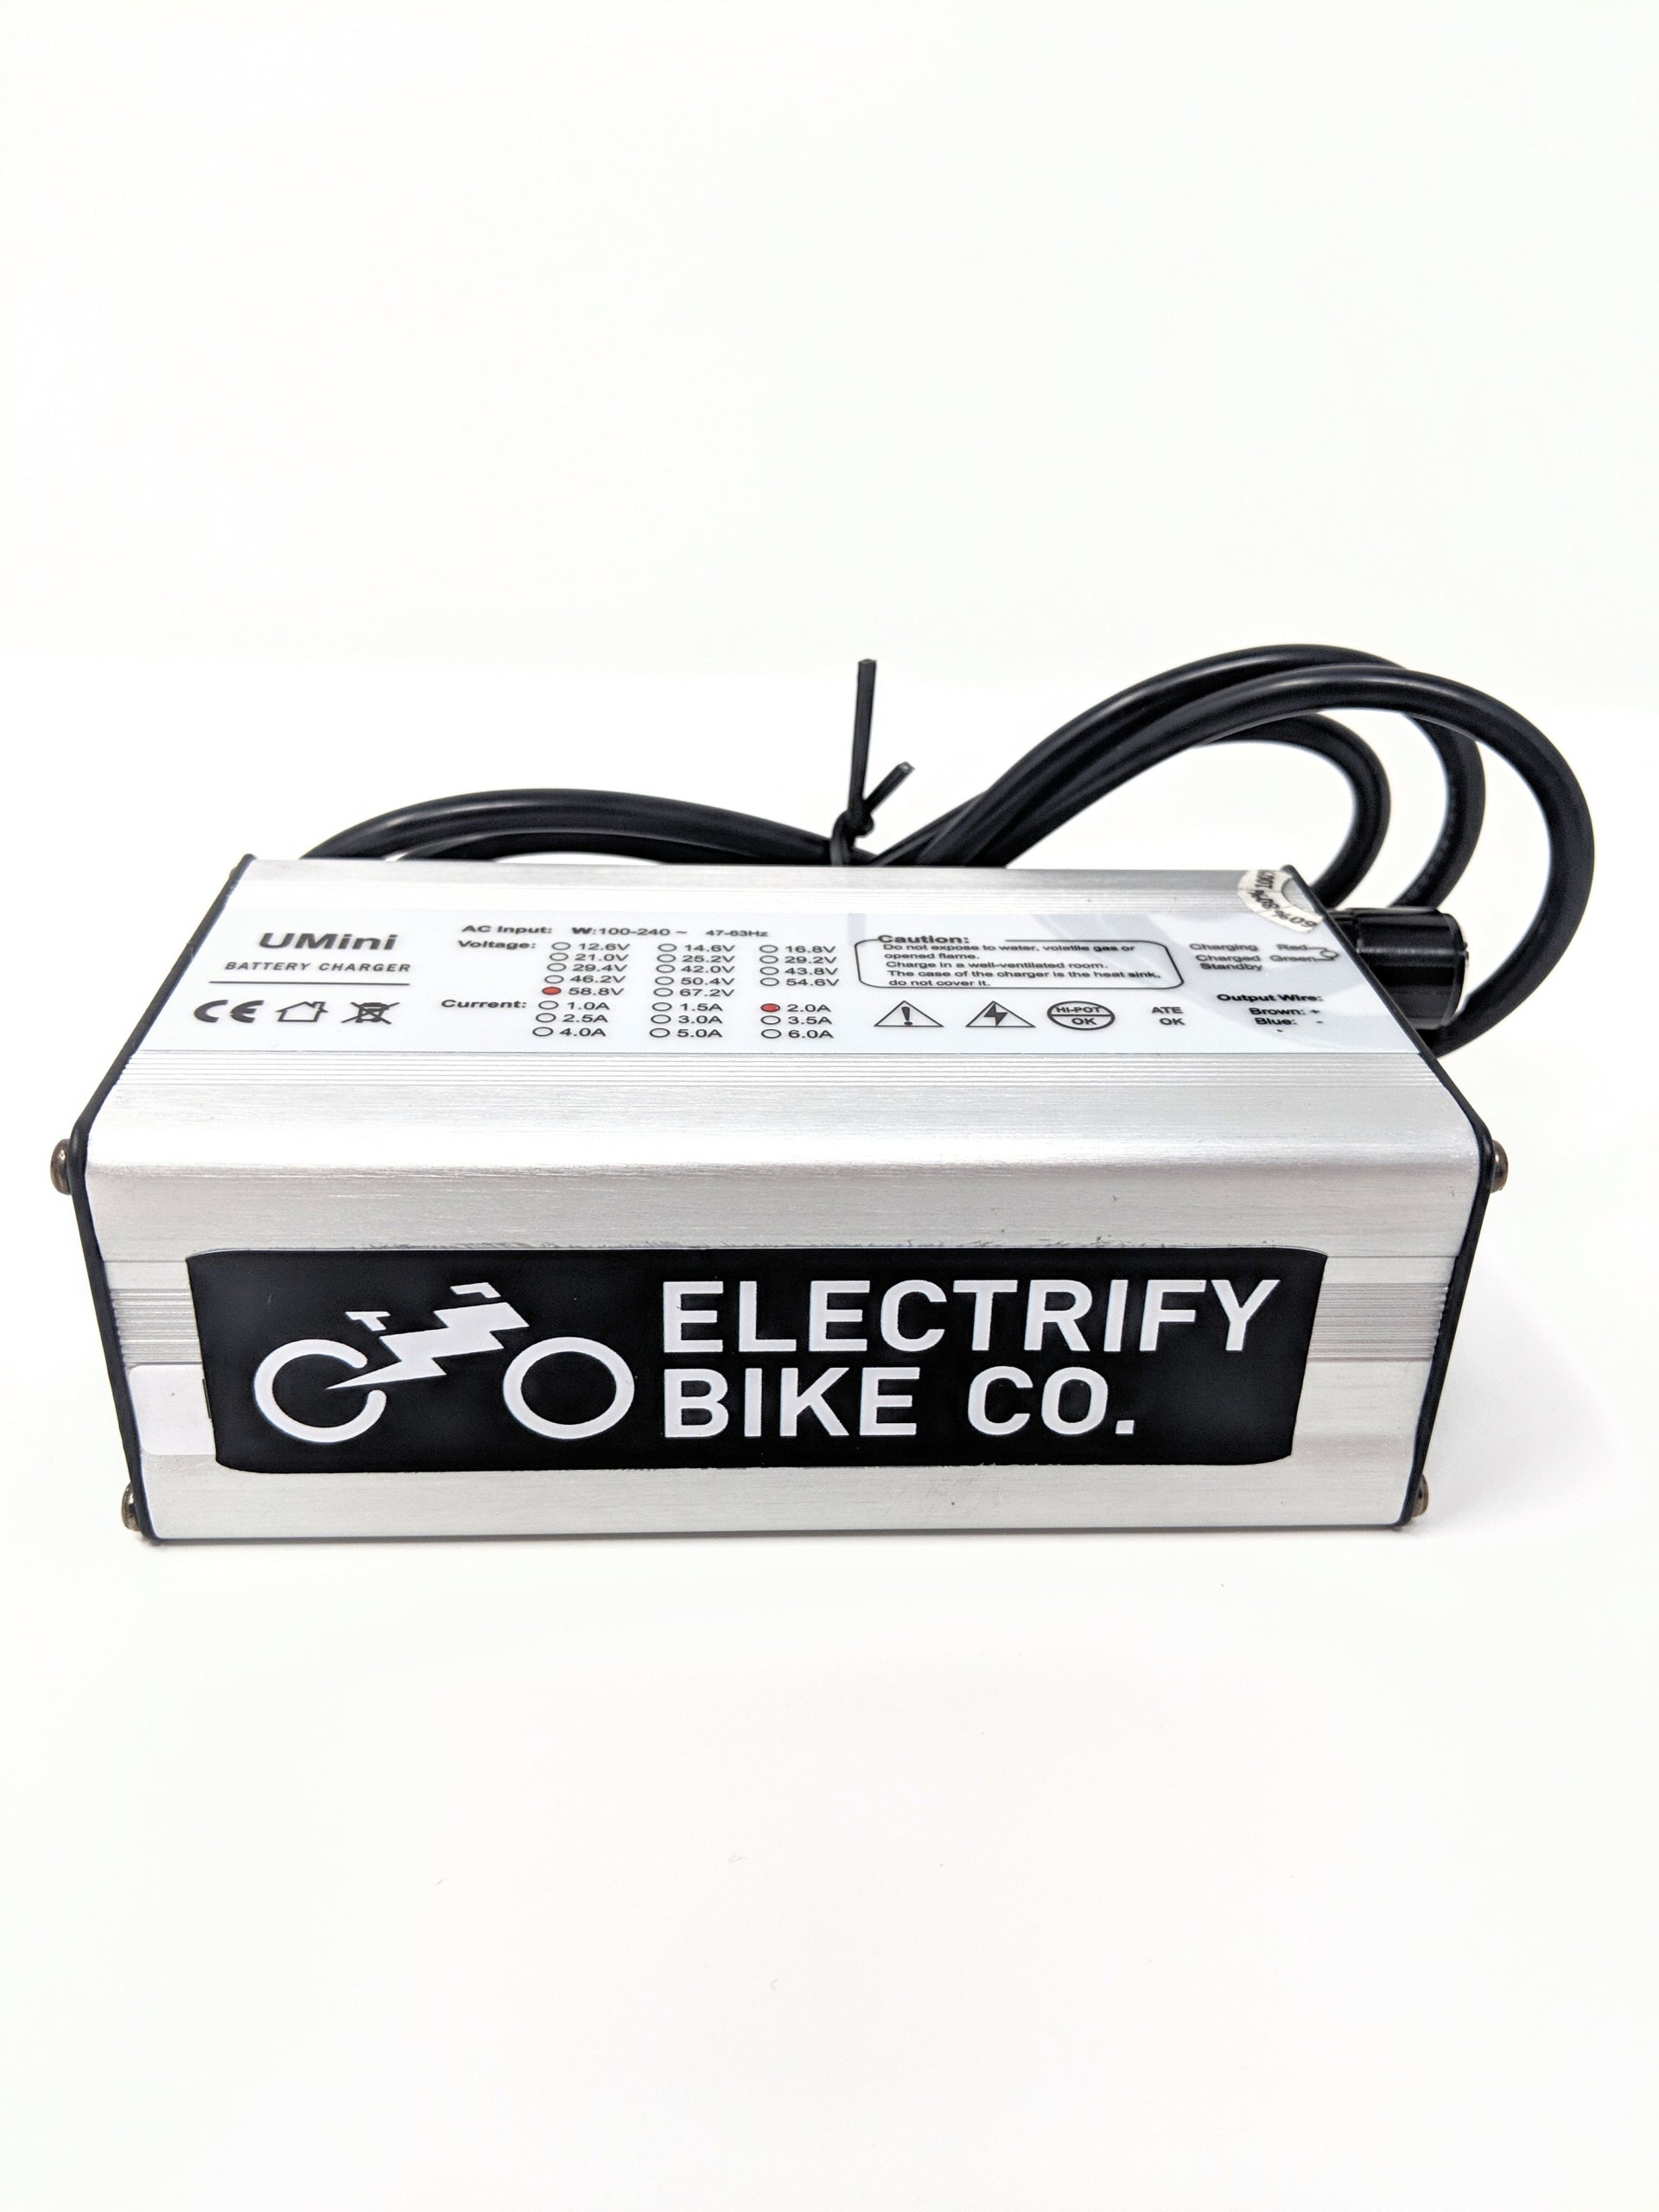 www.electrifybike.com